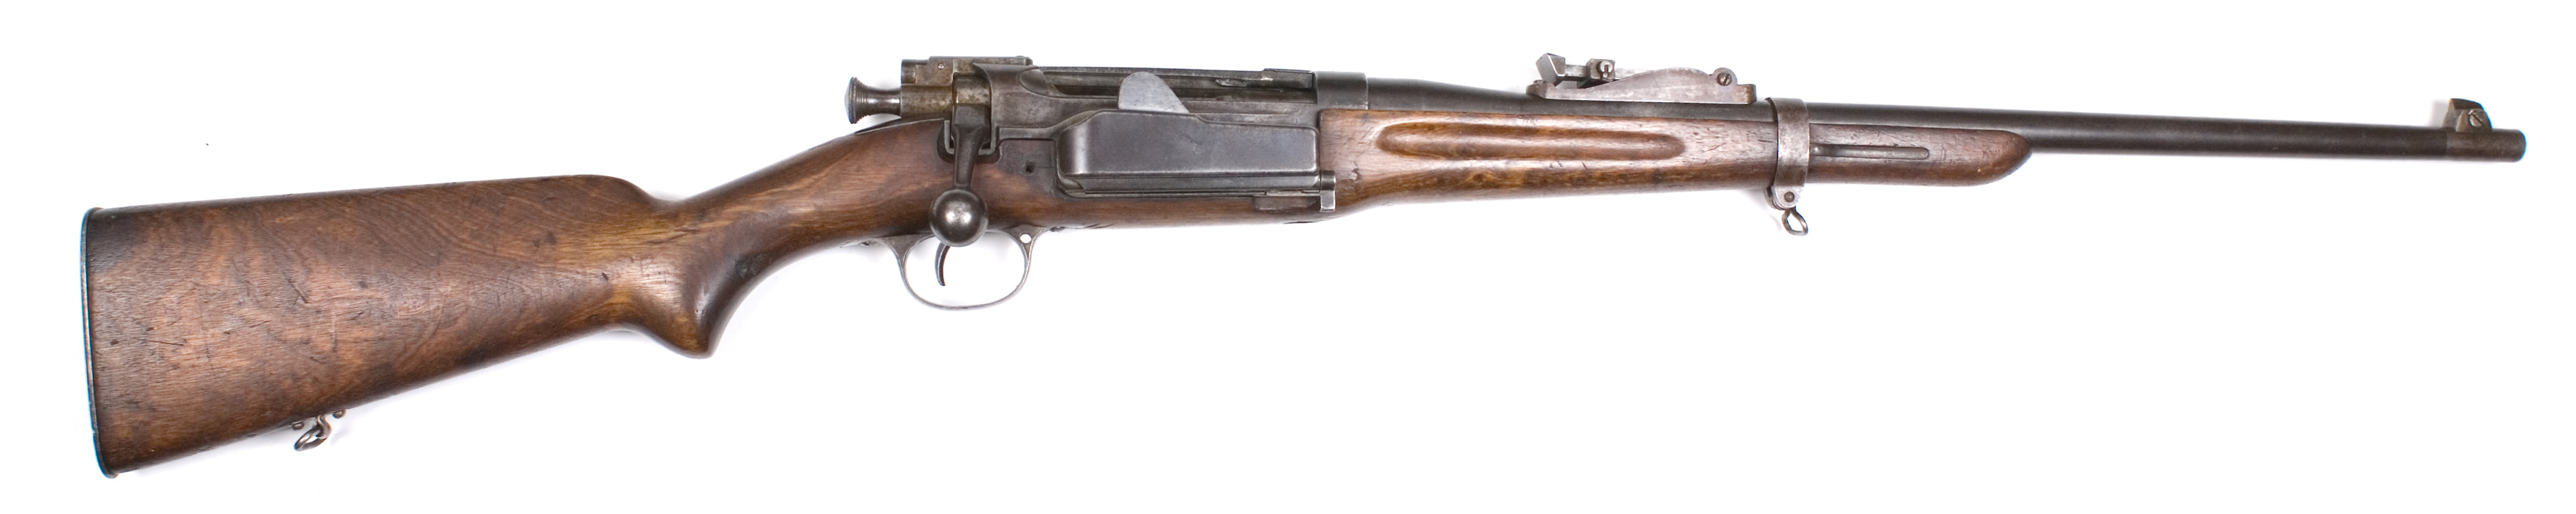 ./guns/rifle/bilder/Rifle-Kongsberg-Krag-M1906-2283-1.jpg